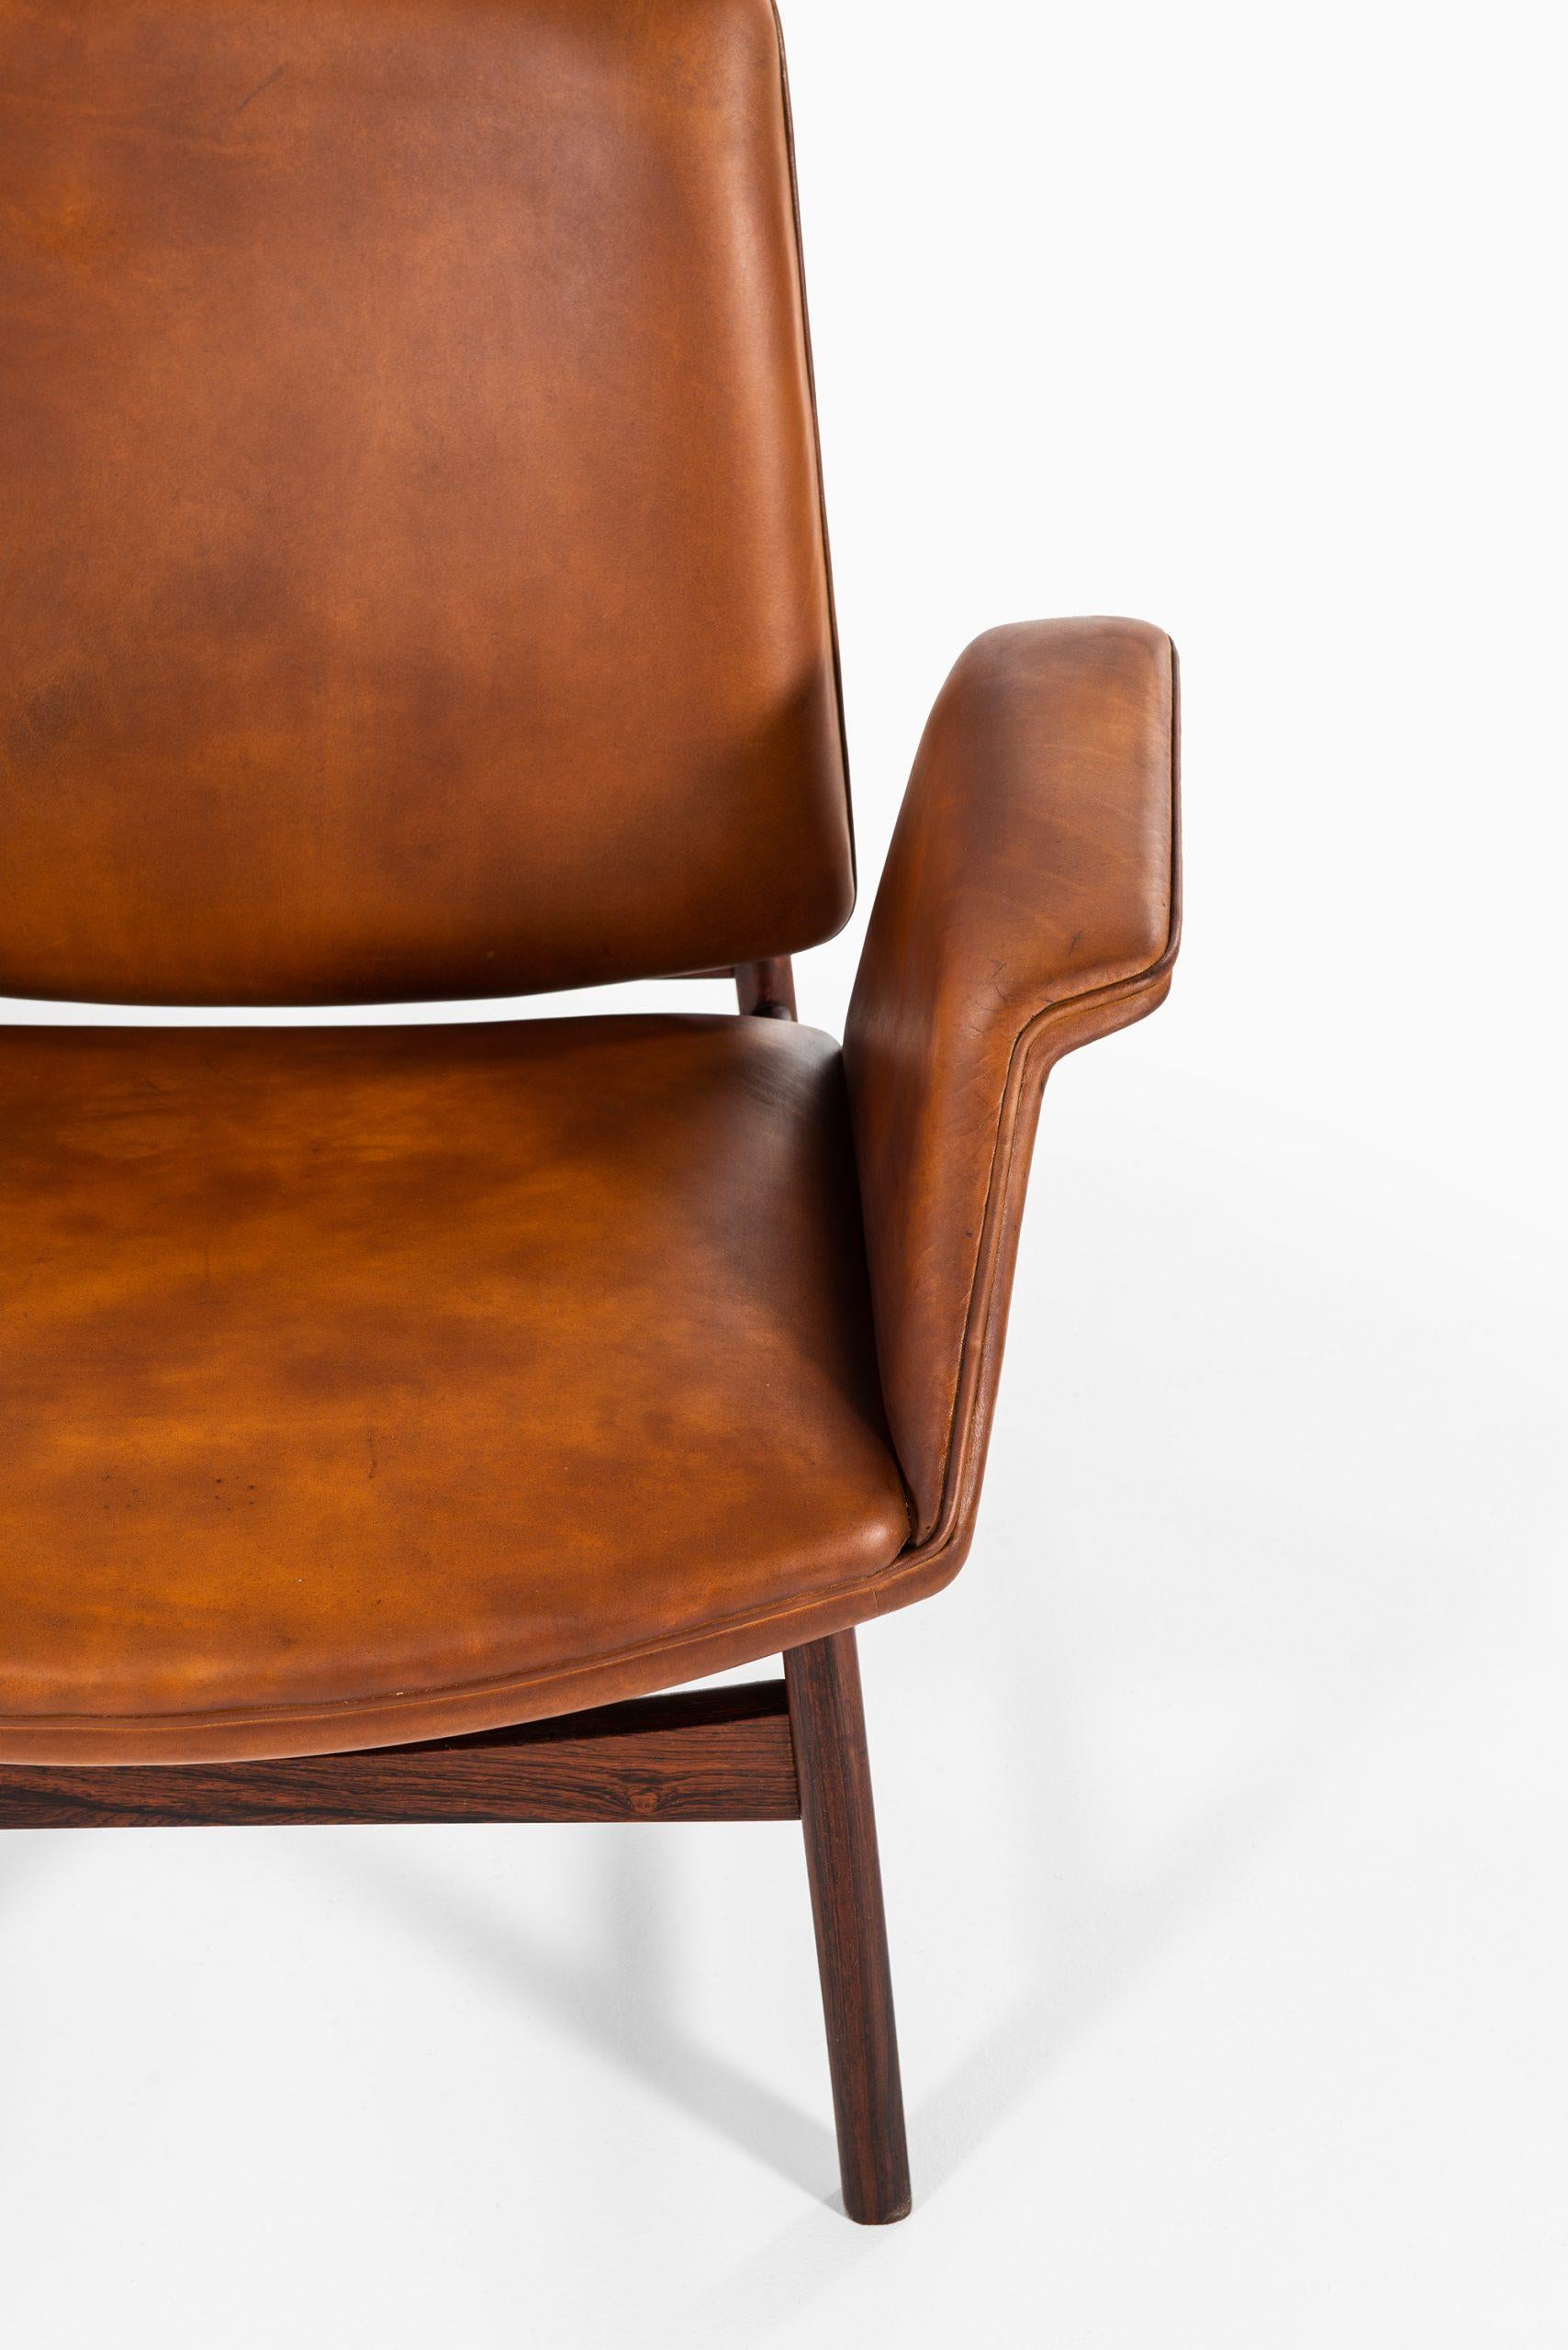 Rare pair of easy chairs model 451 designed by Illum Wikkelsø. Produced by Aarhus Polstrermøbelfabrik in Denmark.